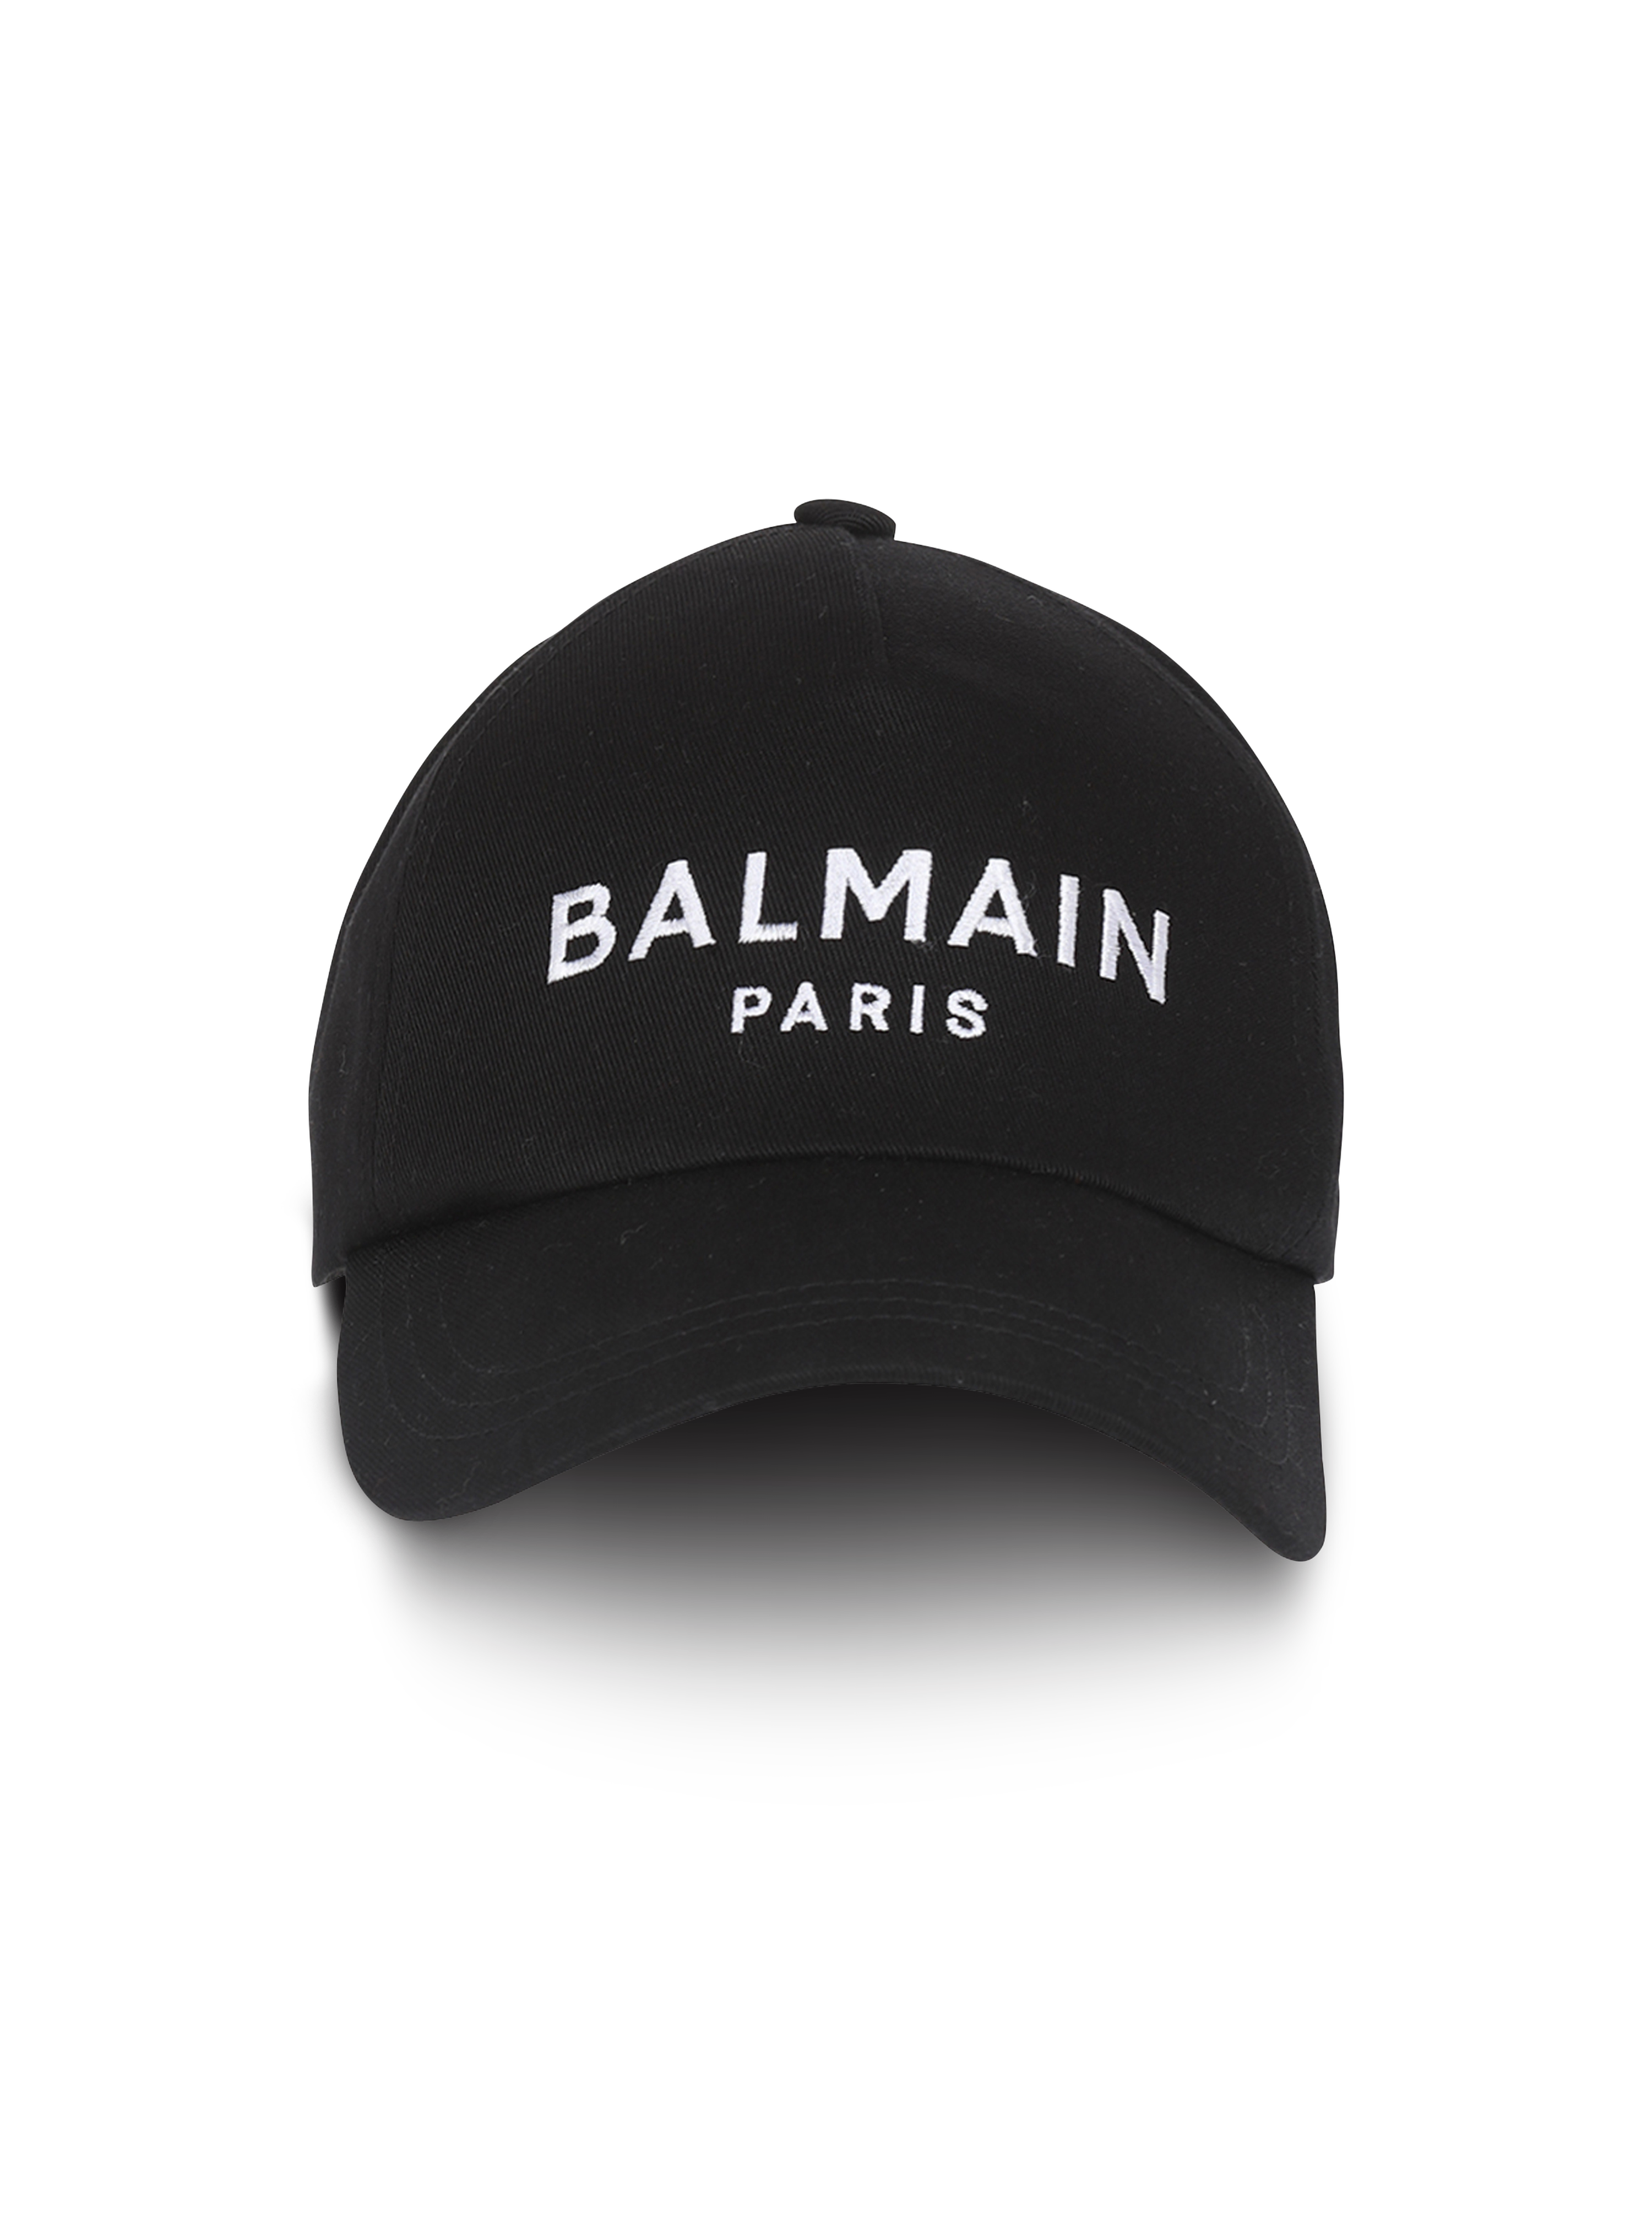 Gorra de algodón con logotipo de Balmain Paris, negro